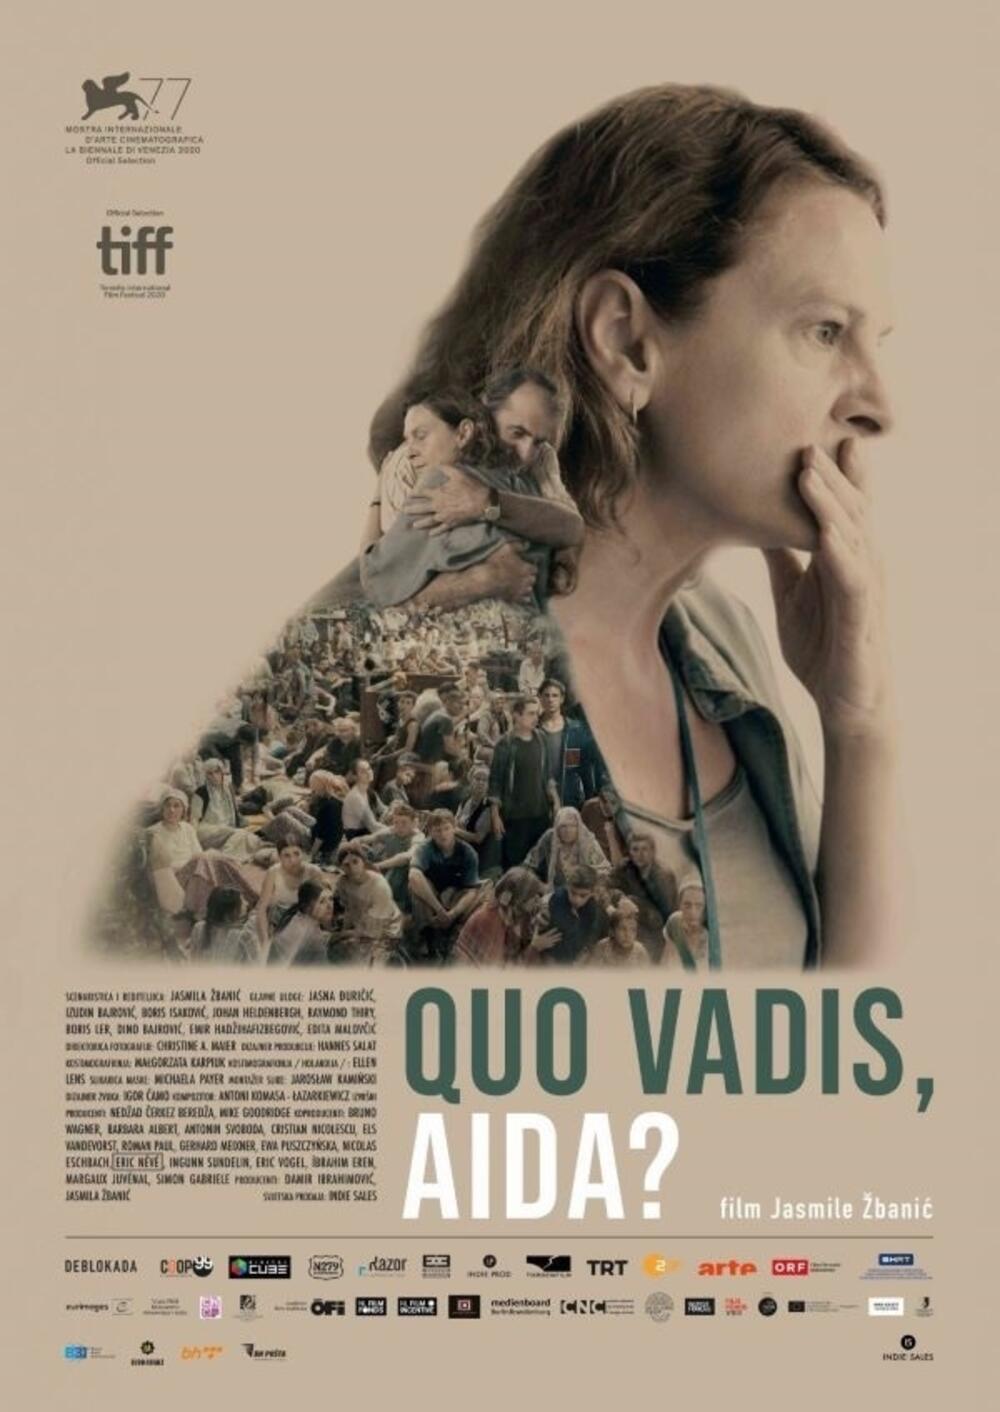 Film o Srebrenici, rediteljke Jasmile Žbanić, na programu 10. decembra u 20 časova